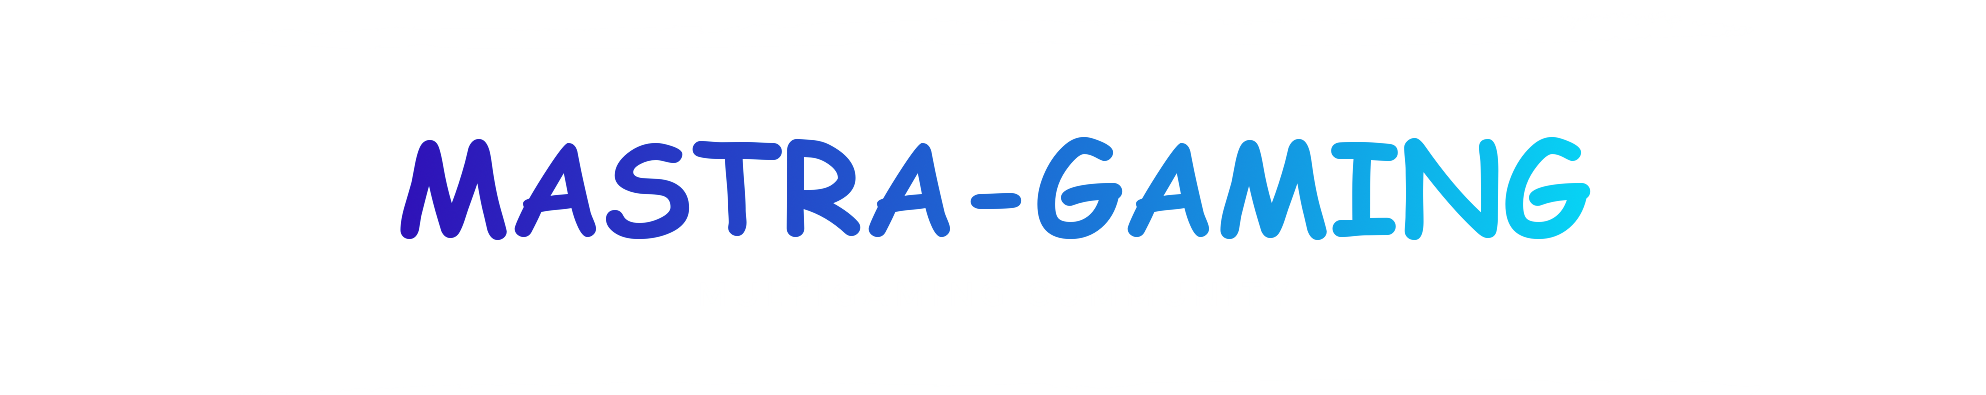 Mastra-Gaming